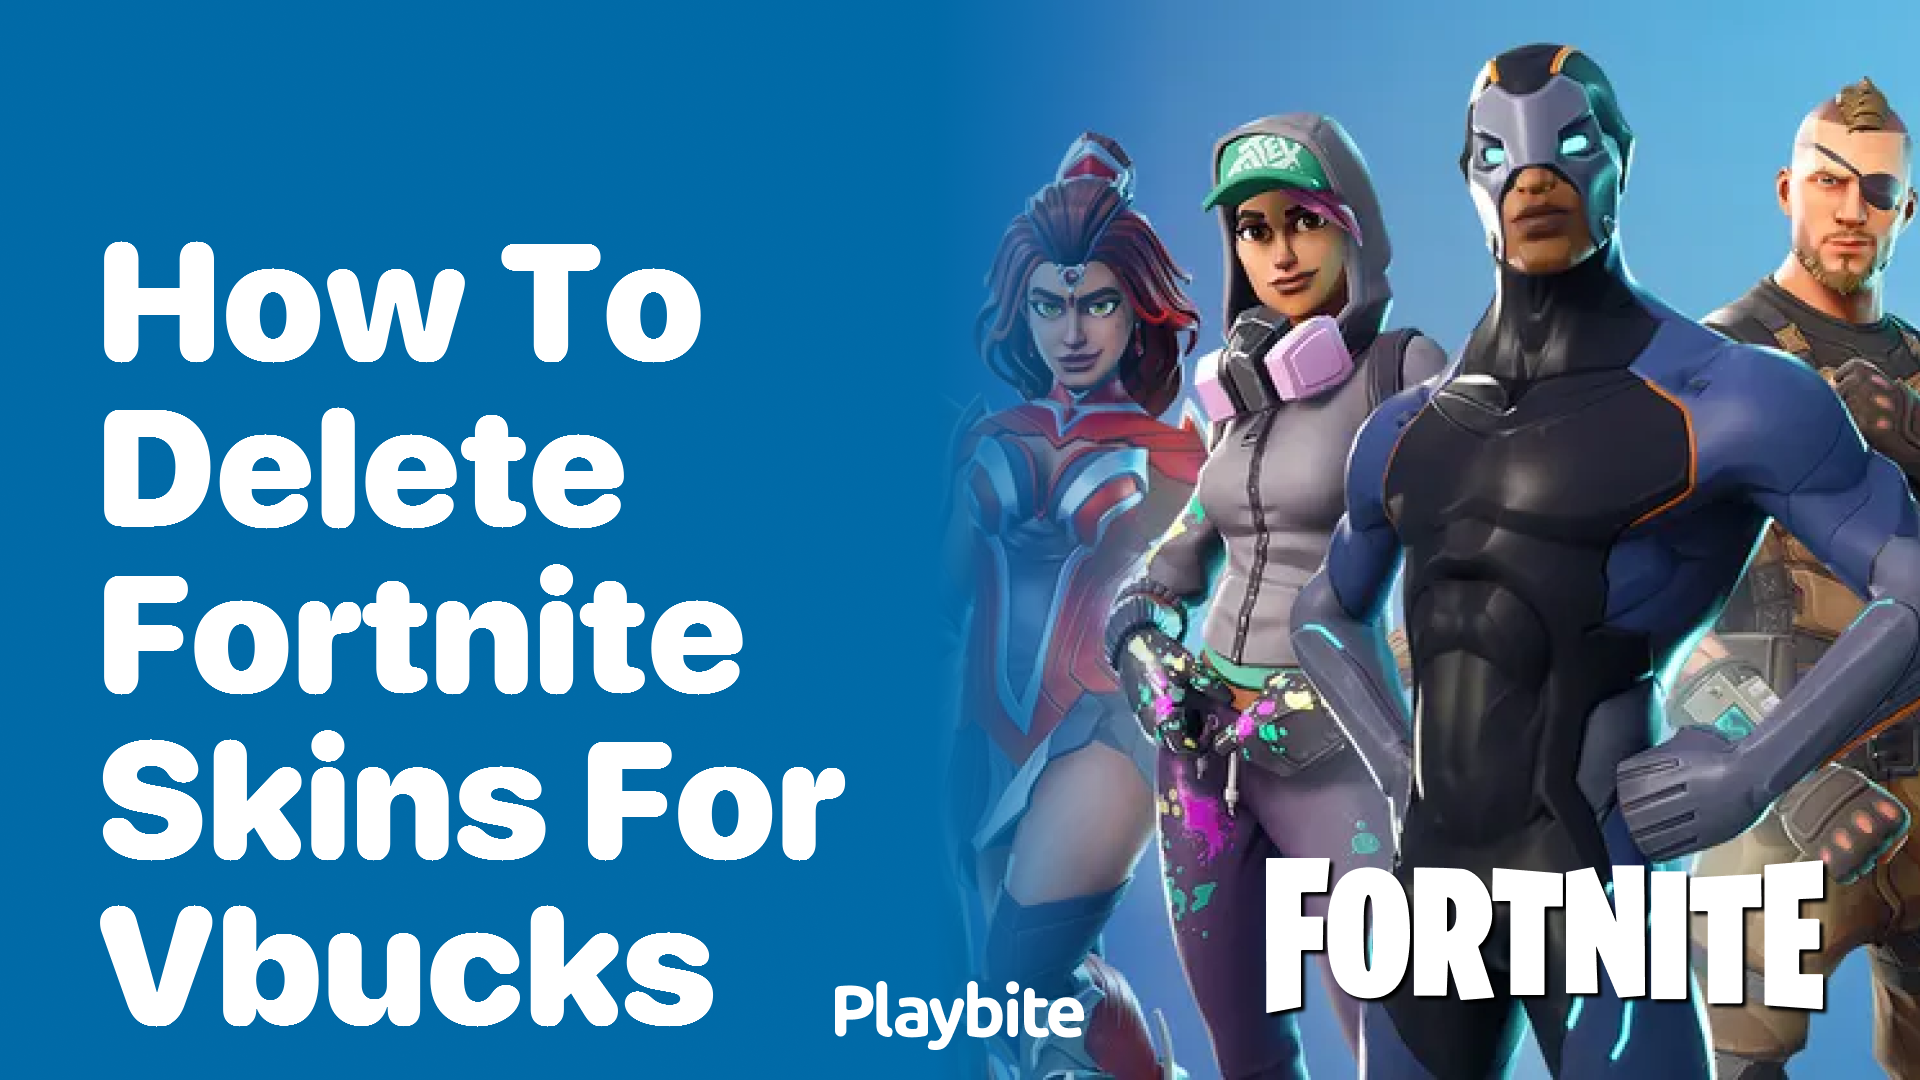 How to Delete Fortnite Skins for V-Bucks?